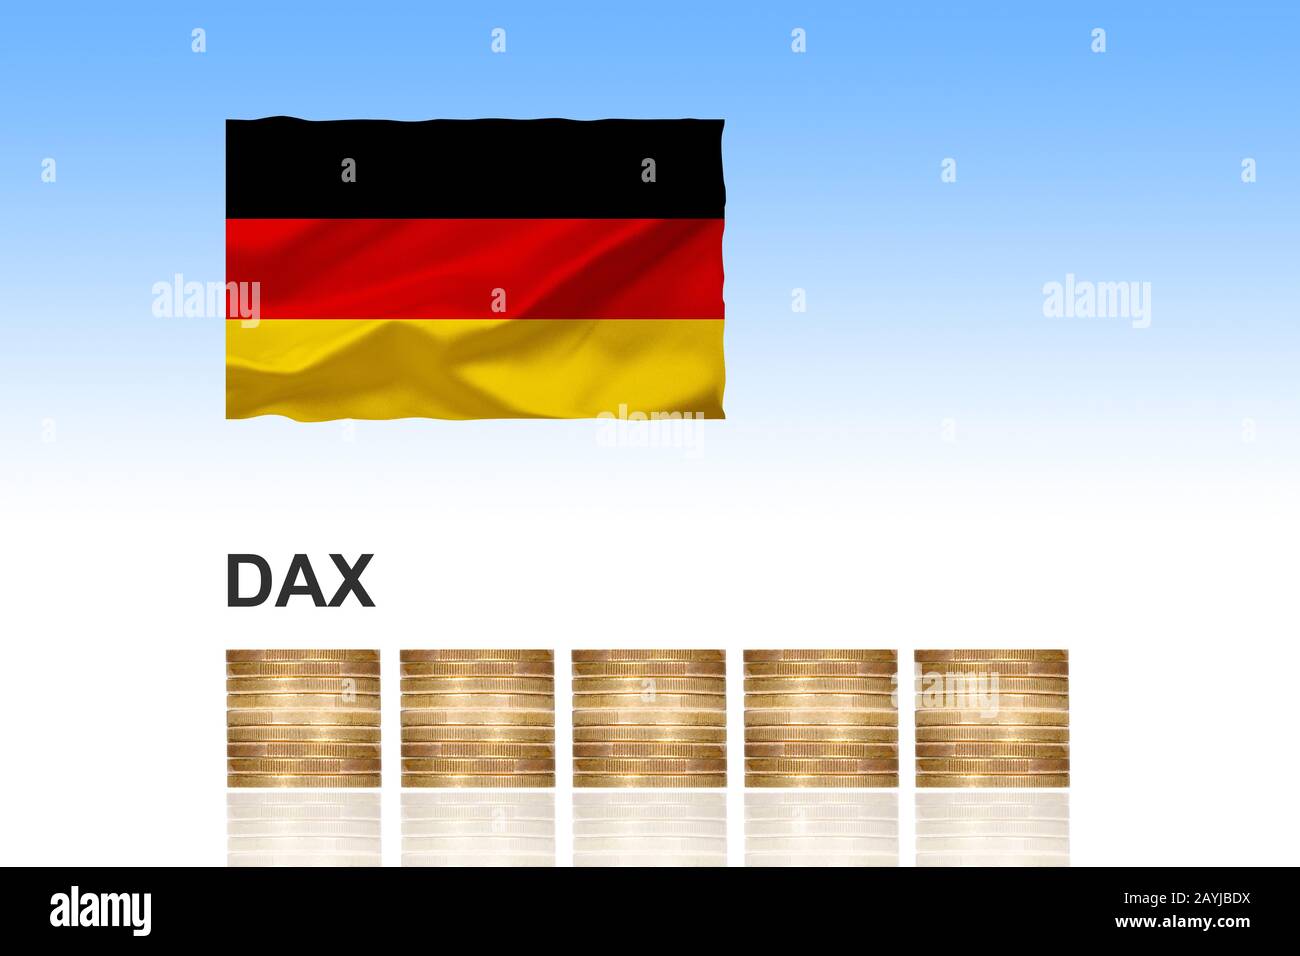 Dax, Deutscher Aktienindex, con monedas de euro apiladas y bandera alemana, componiendo, Alemania Foto de stock